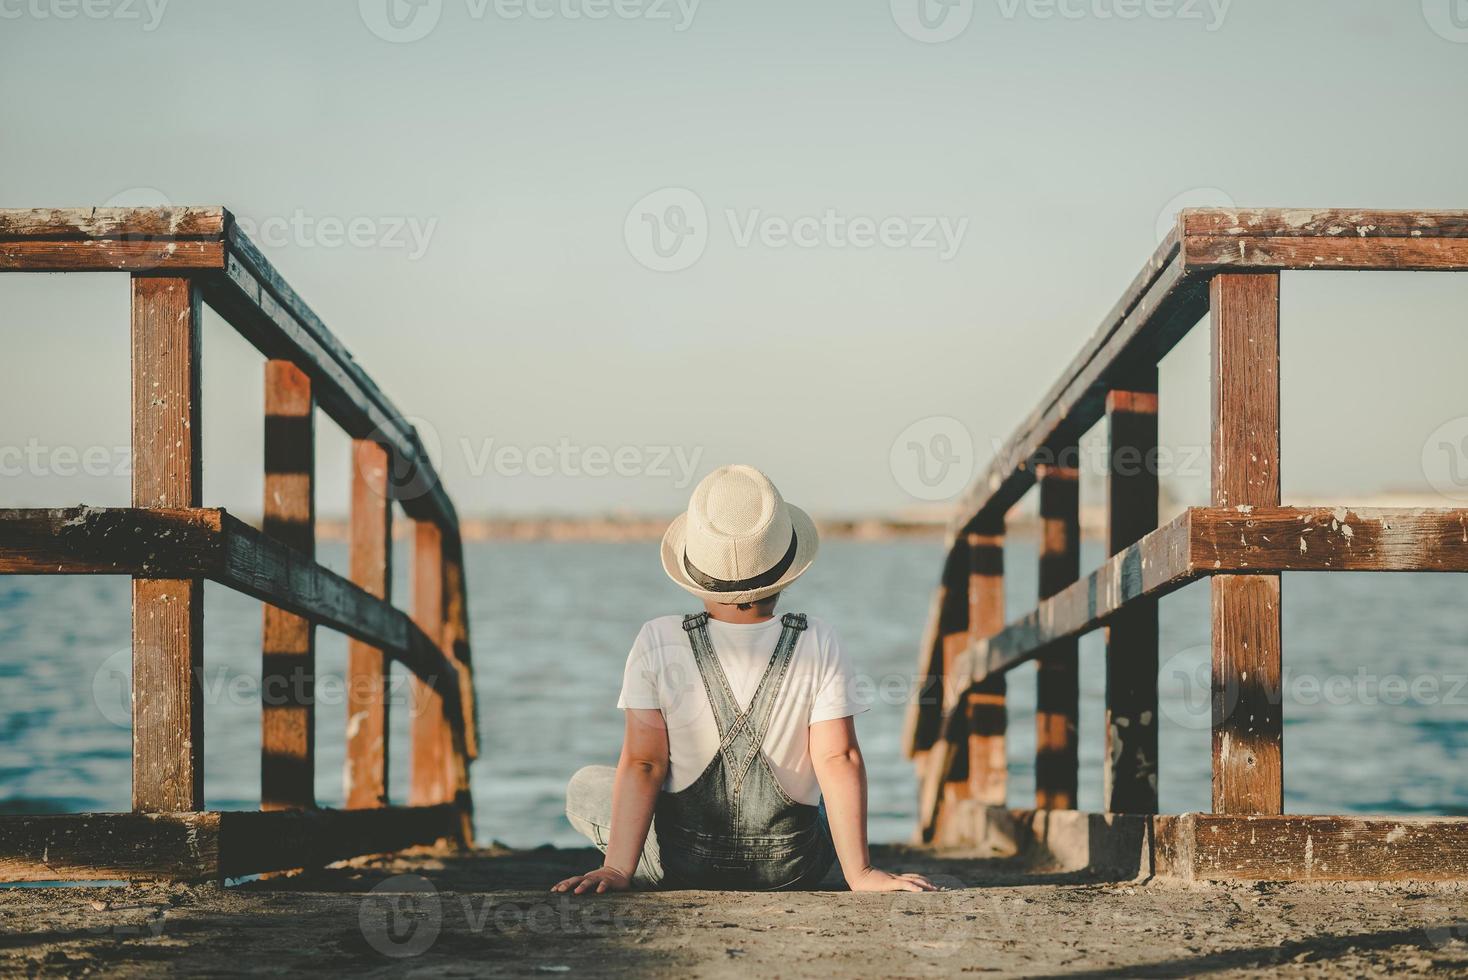 vue arrière d'un enfant pensif assis regardant la mer photo